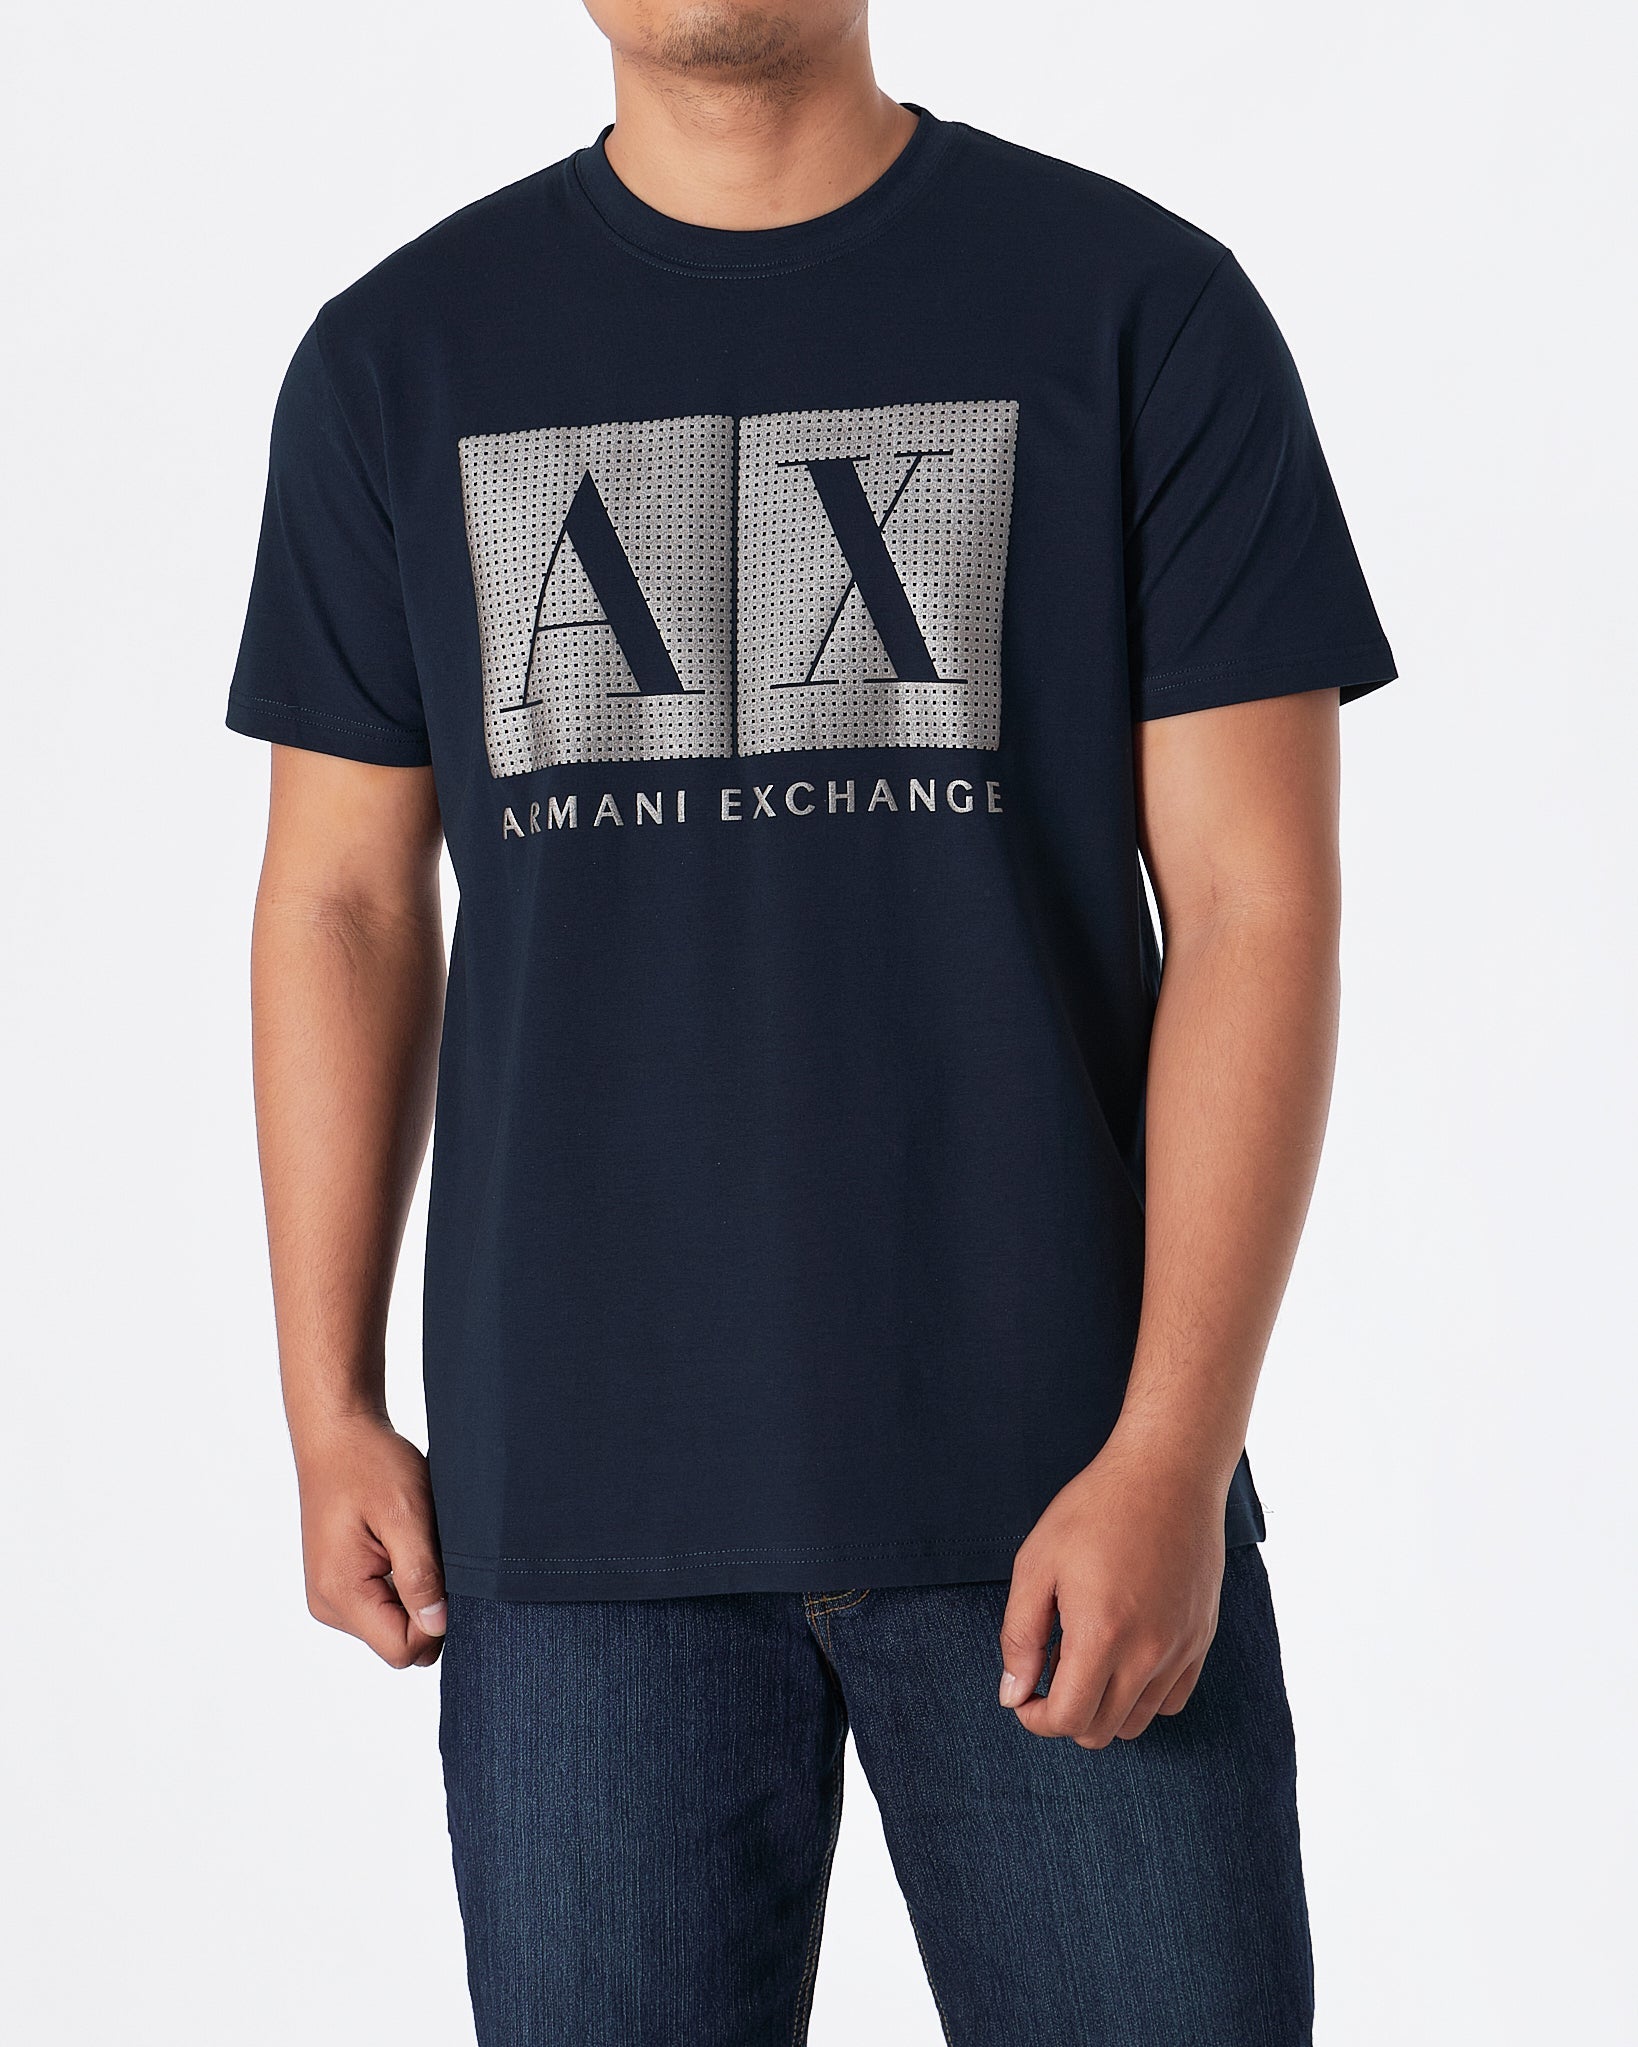 MOI OUTFIT-ARM Exchange Men Blue T-Shirt 17.90